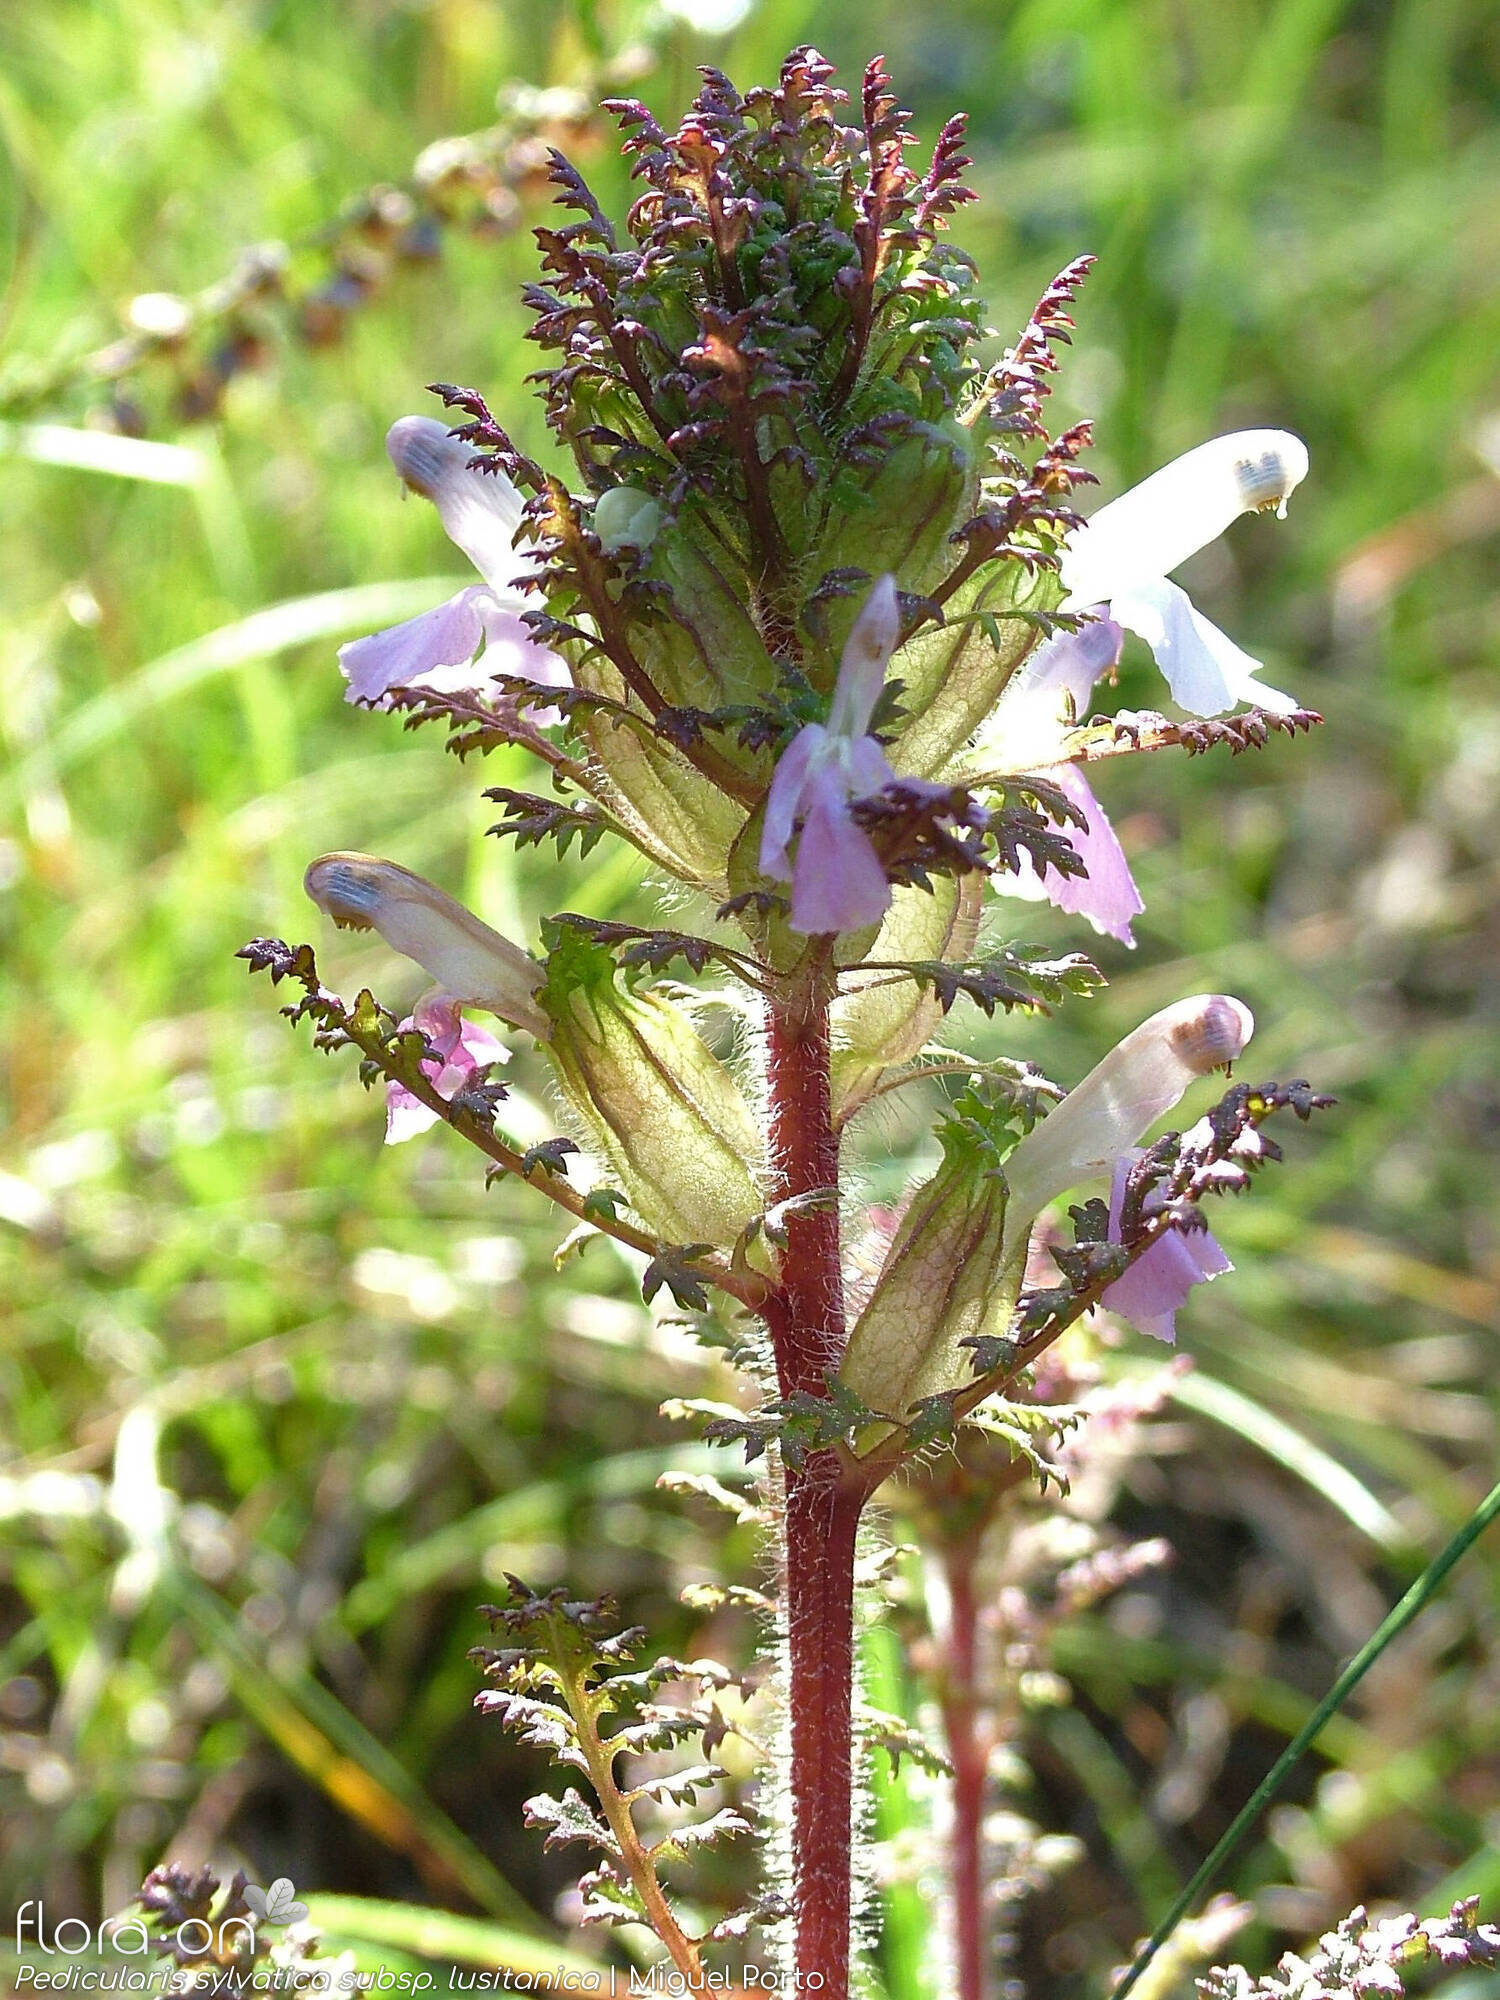 Pedicularis sylvatica lusitanica - Flor (geral) | Miguel Porto; CC BY-NC 4.0